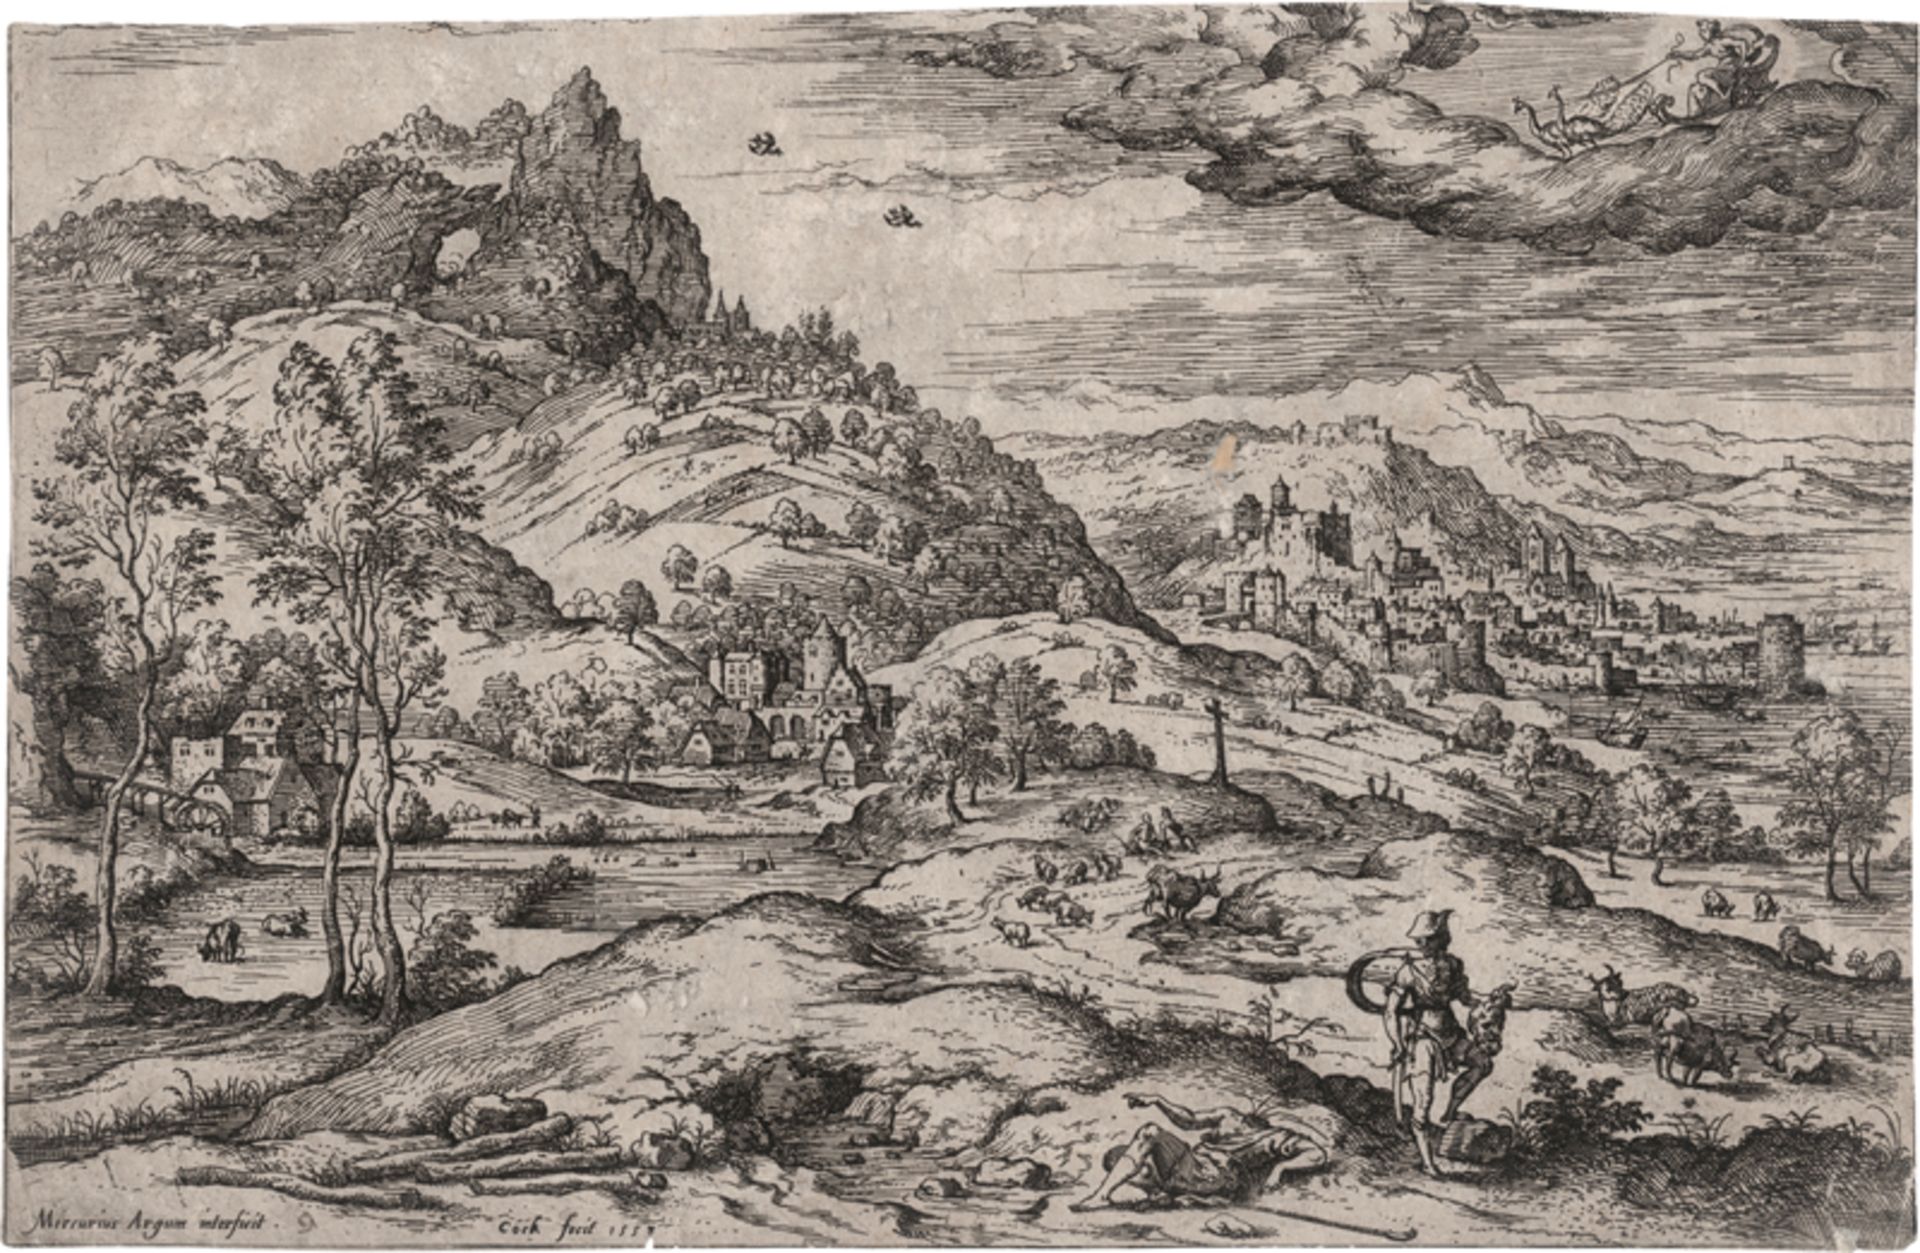 Cock, Hieronymus: Die Landschaft mit Merkur, den Kopf von Argus haltend